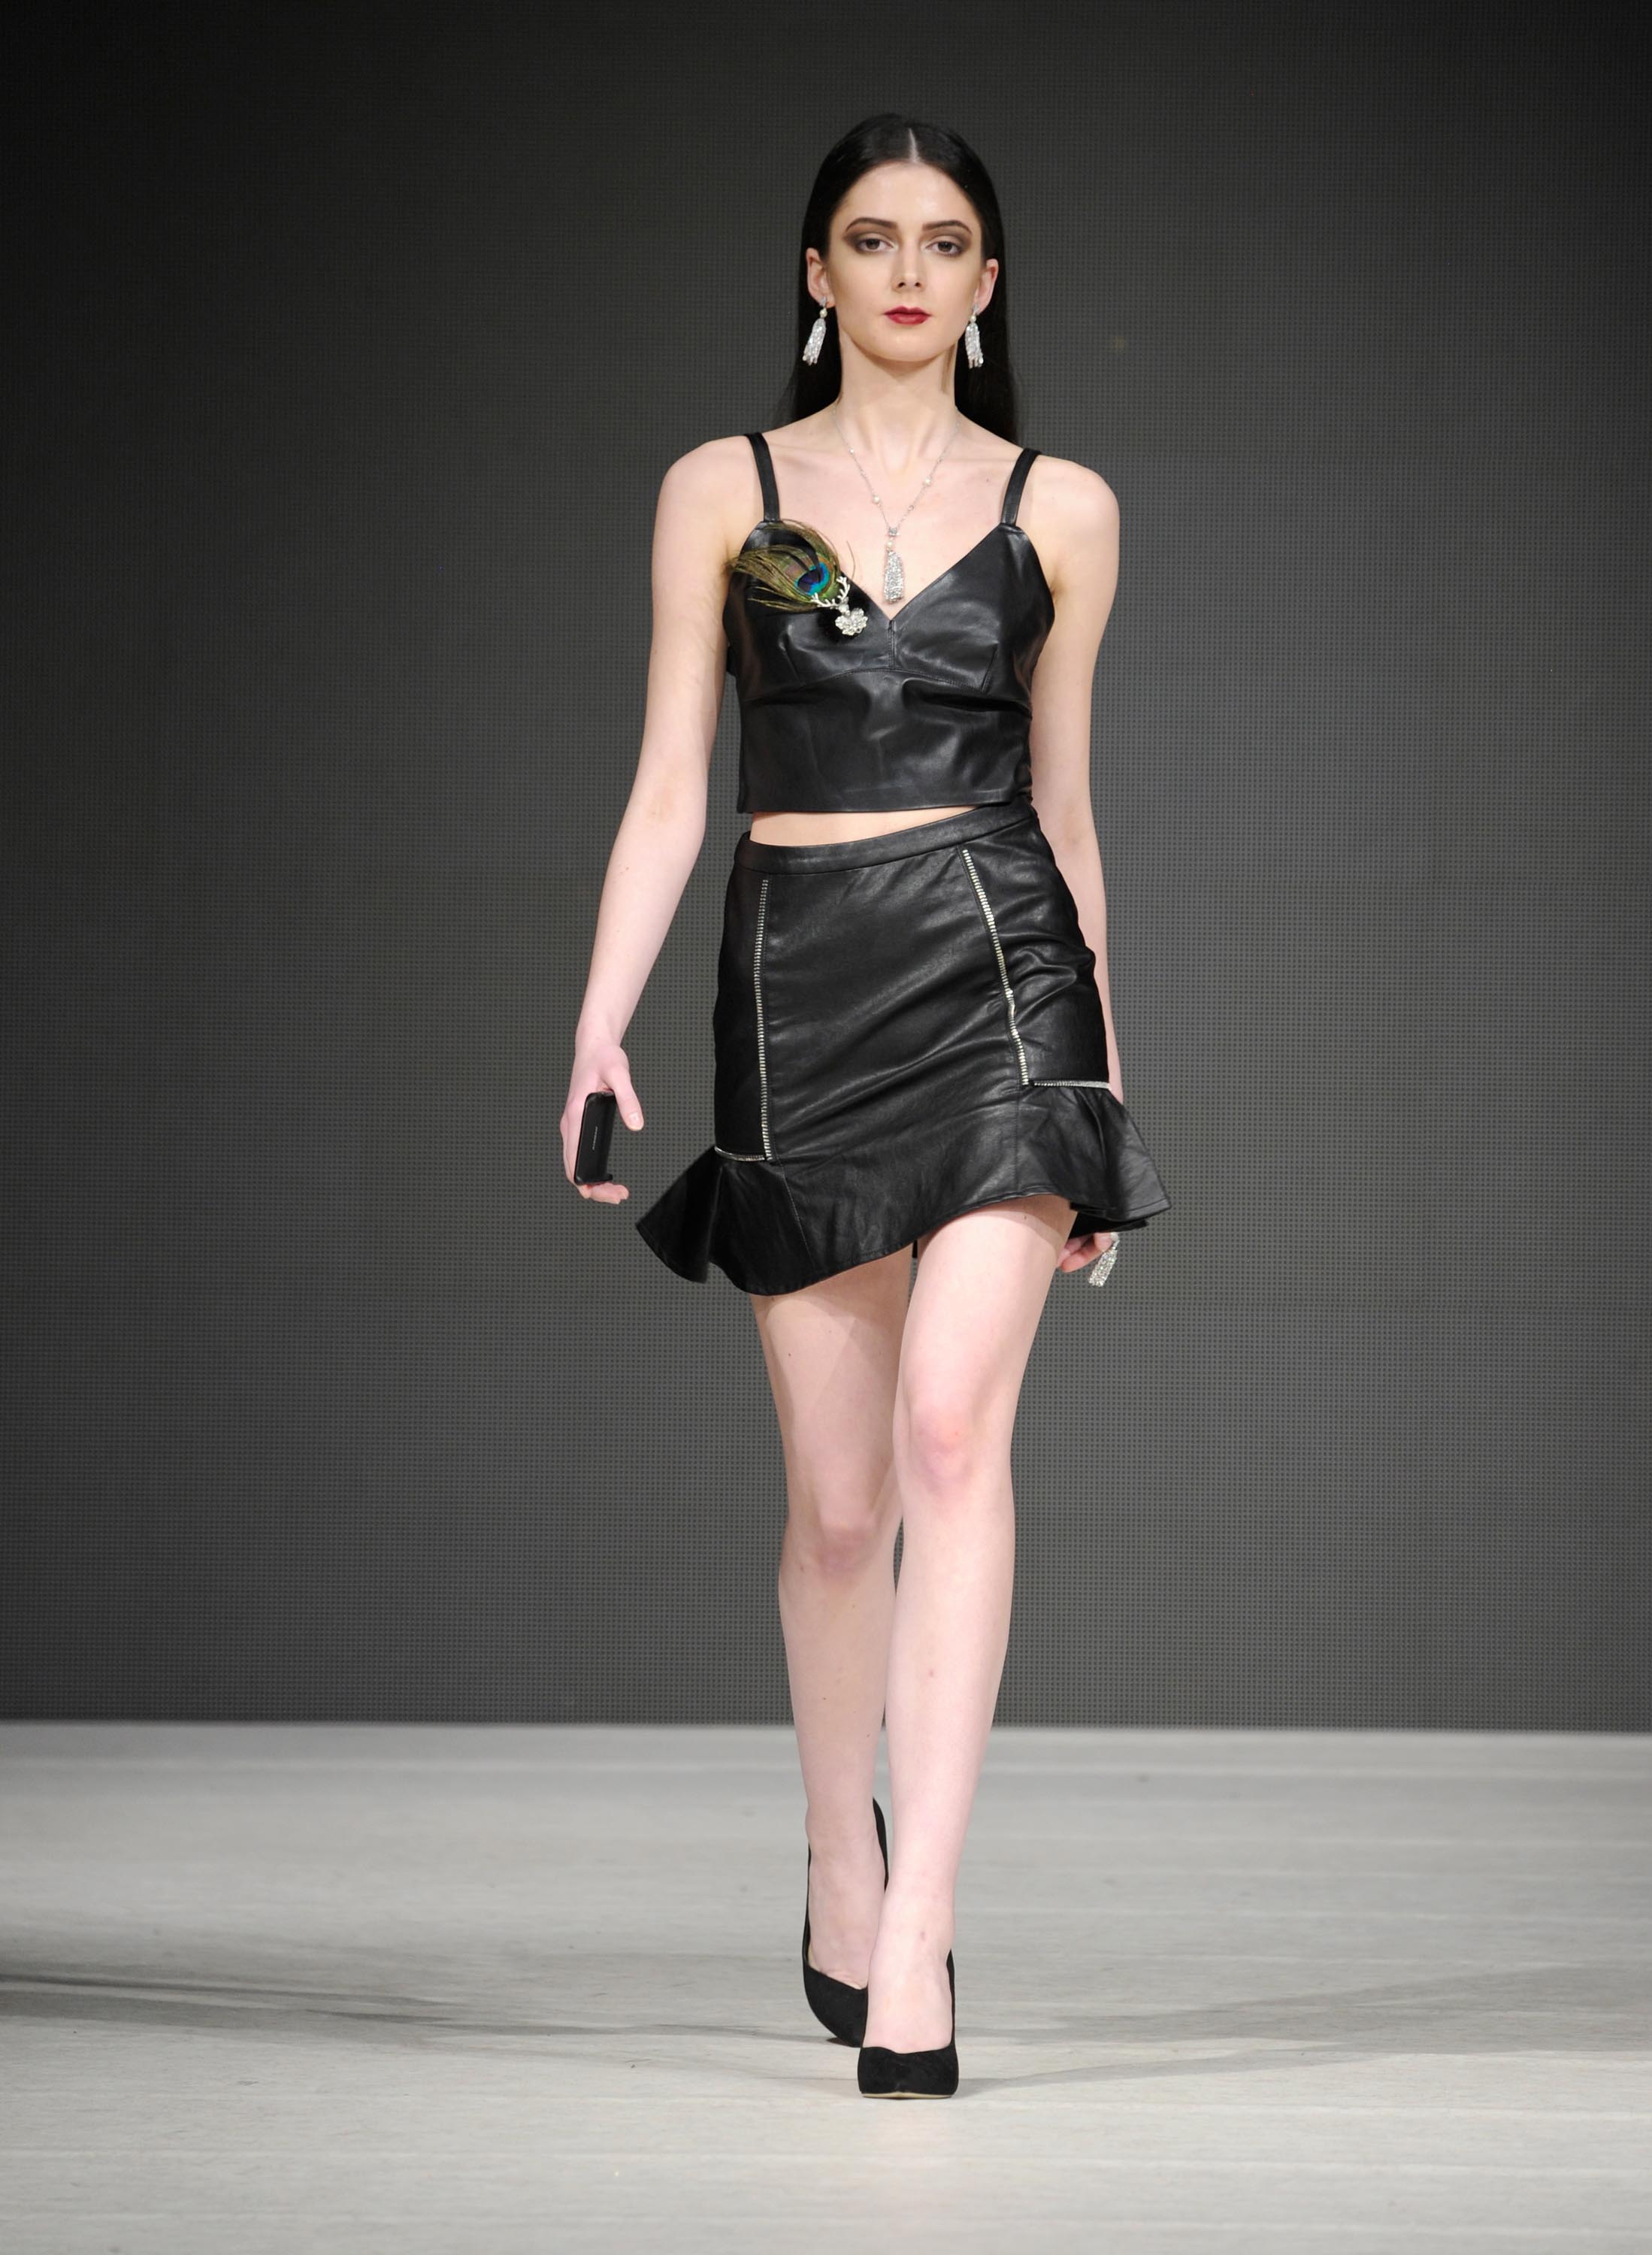 Models walk the runway at Vancouver Fashion Week